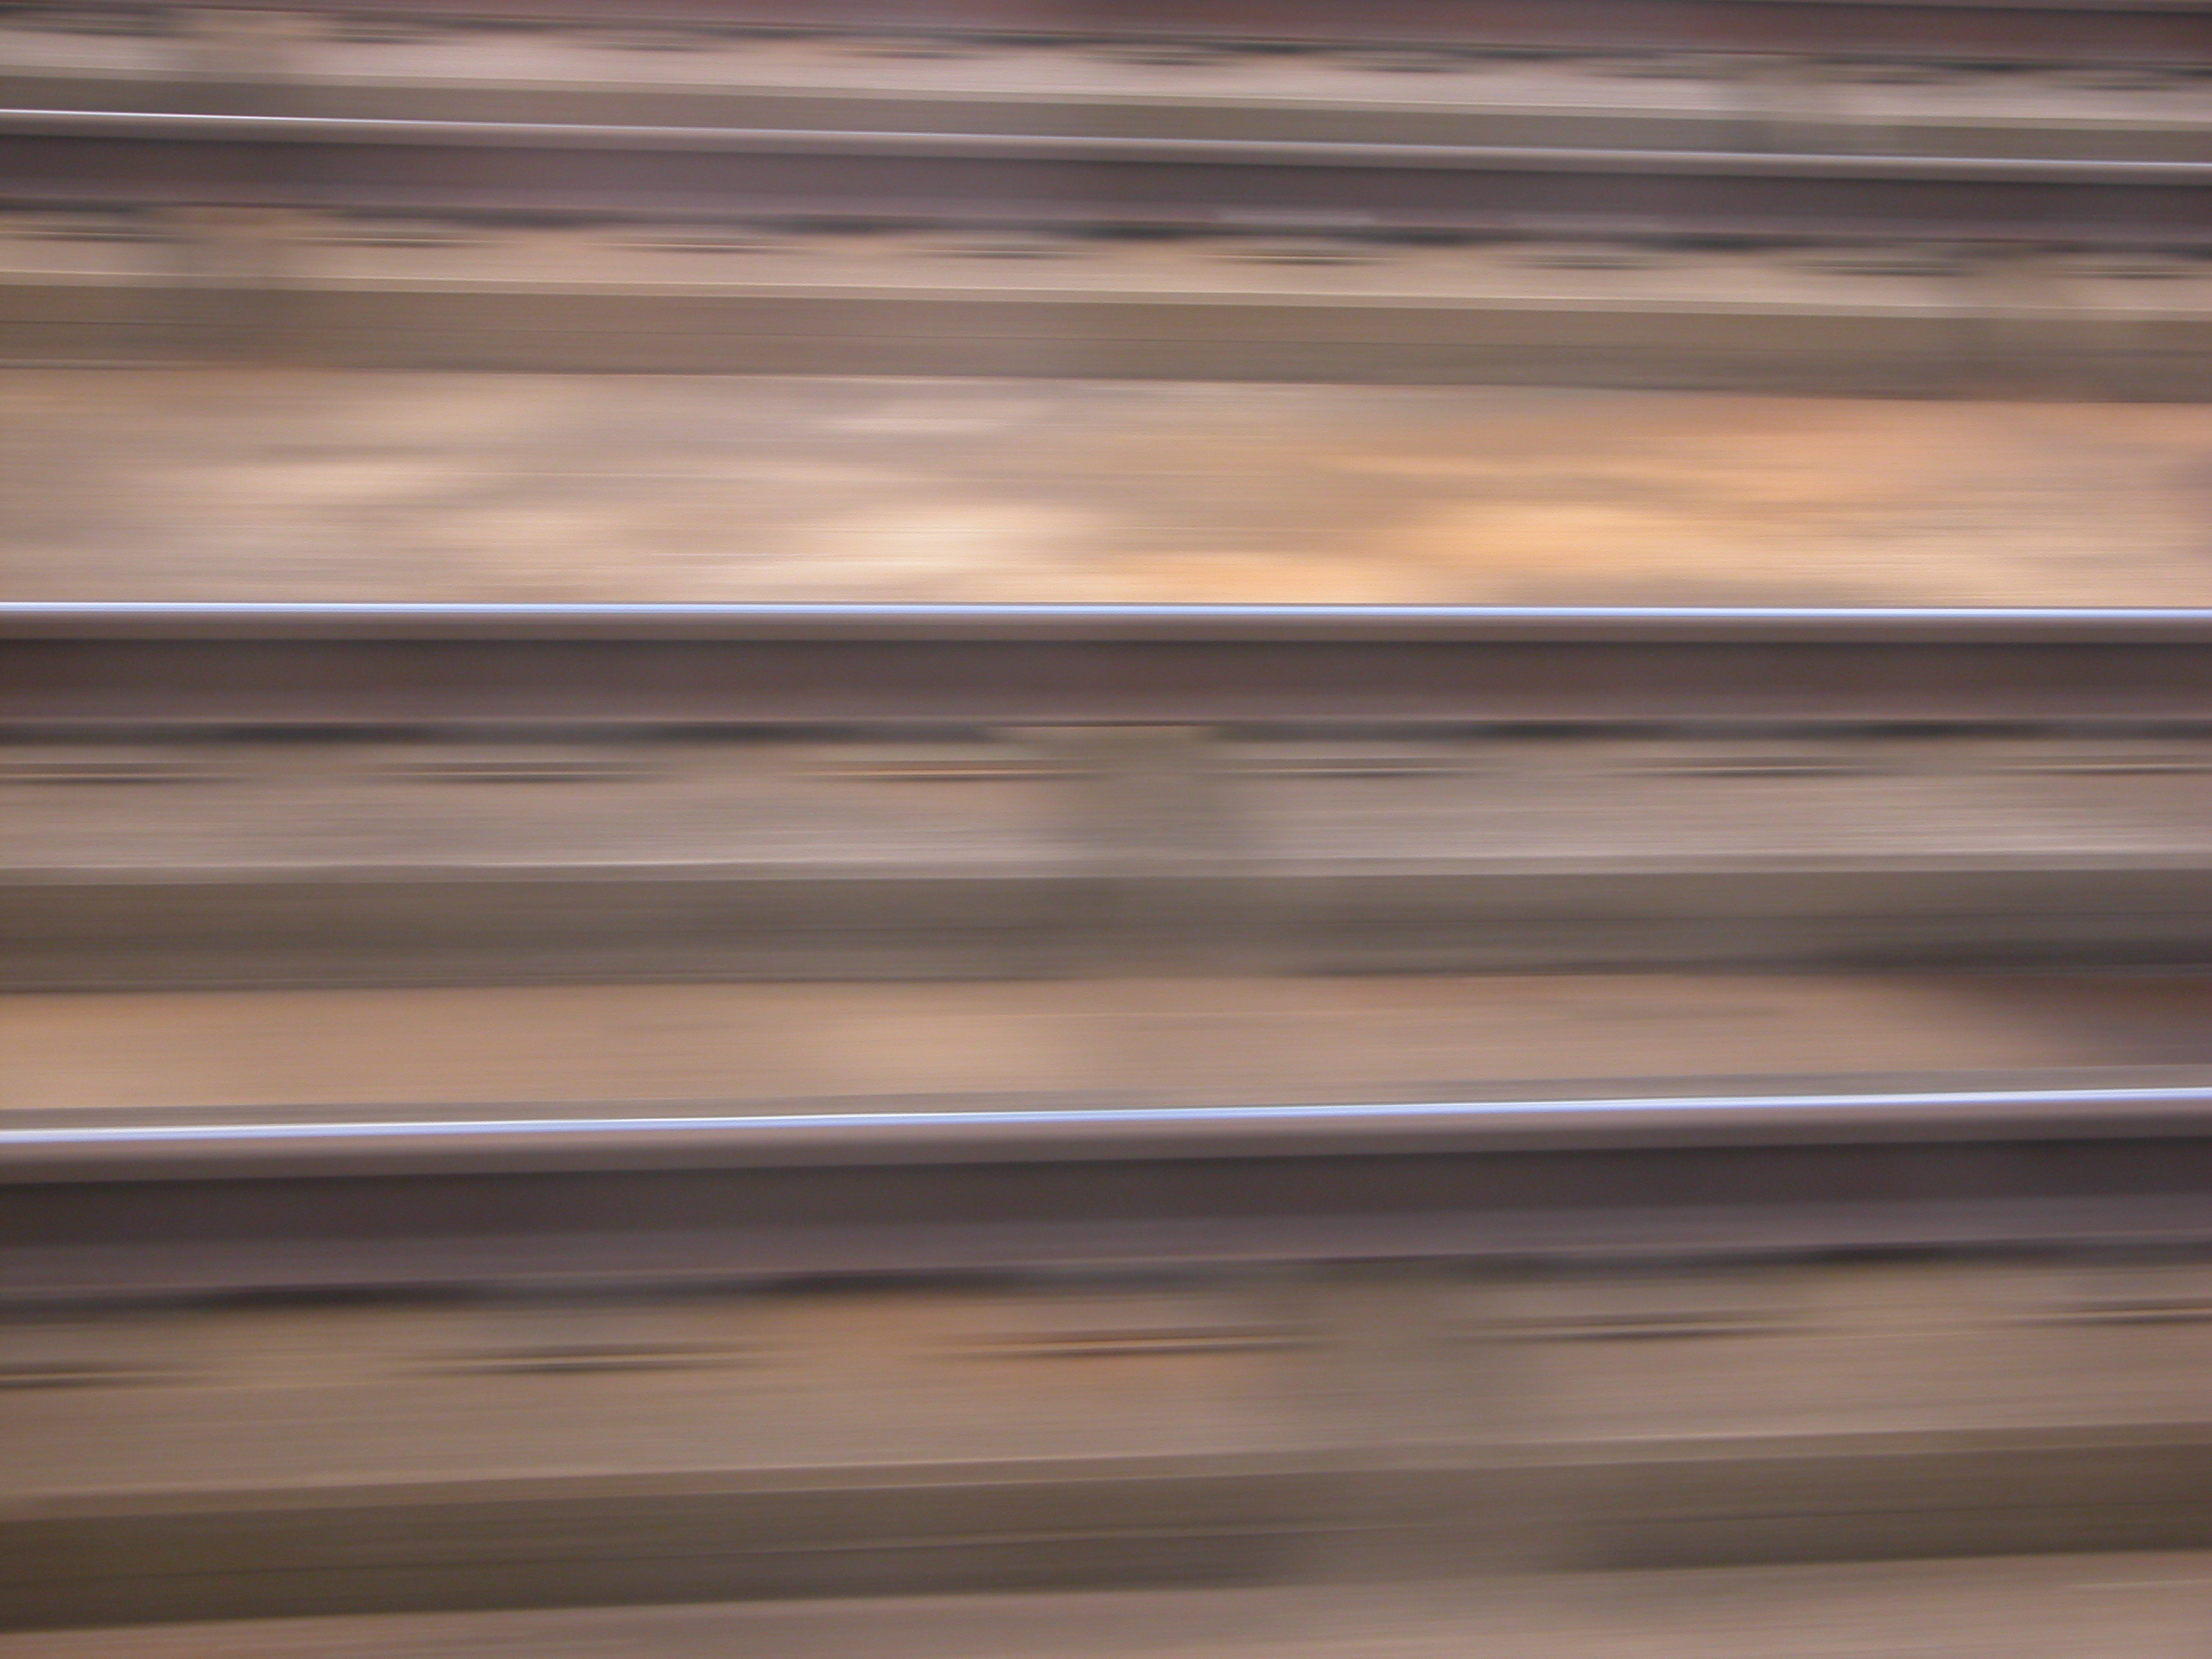 blurs track rail rails speed train brown